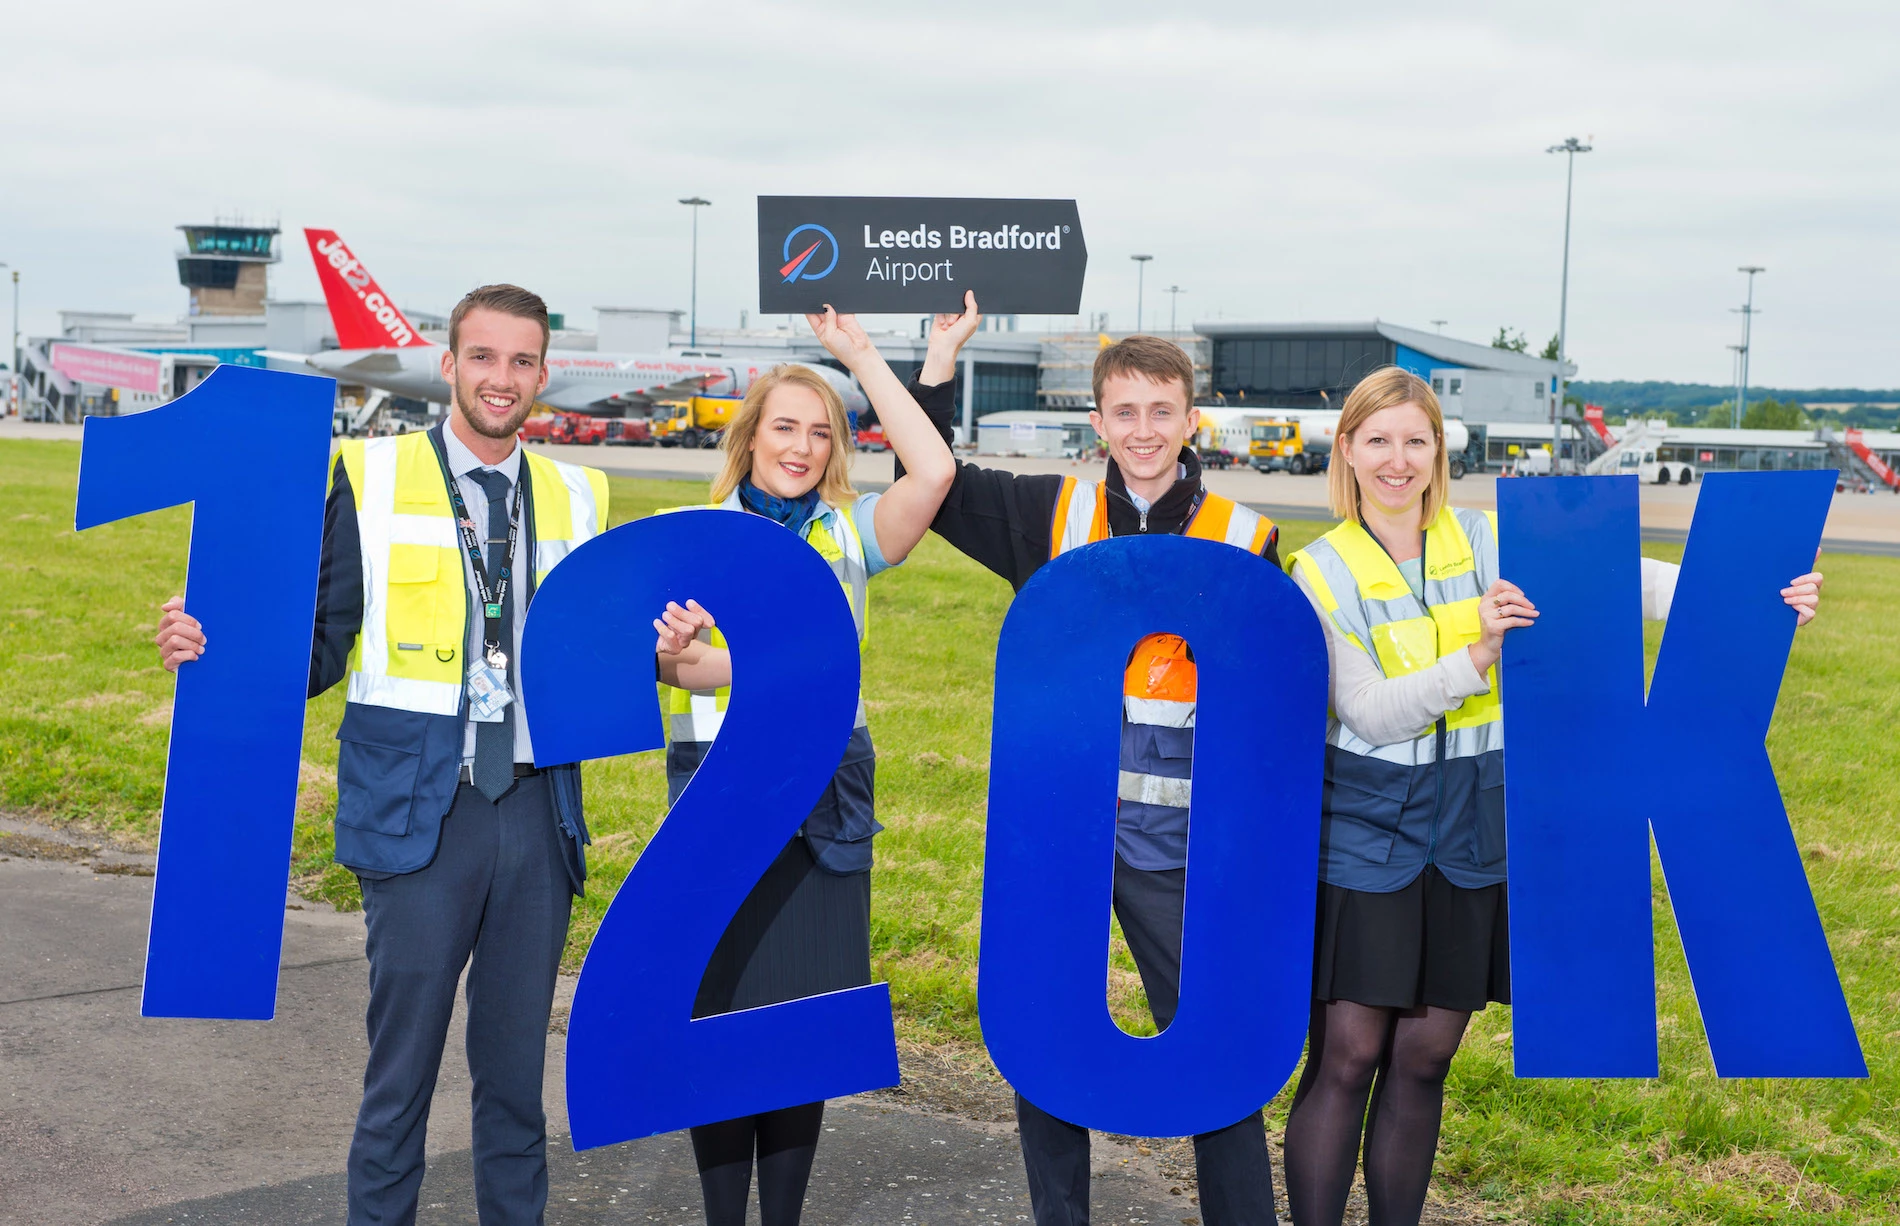 Leeds Bradford airport welcomes 120k passengers in one week. 